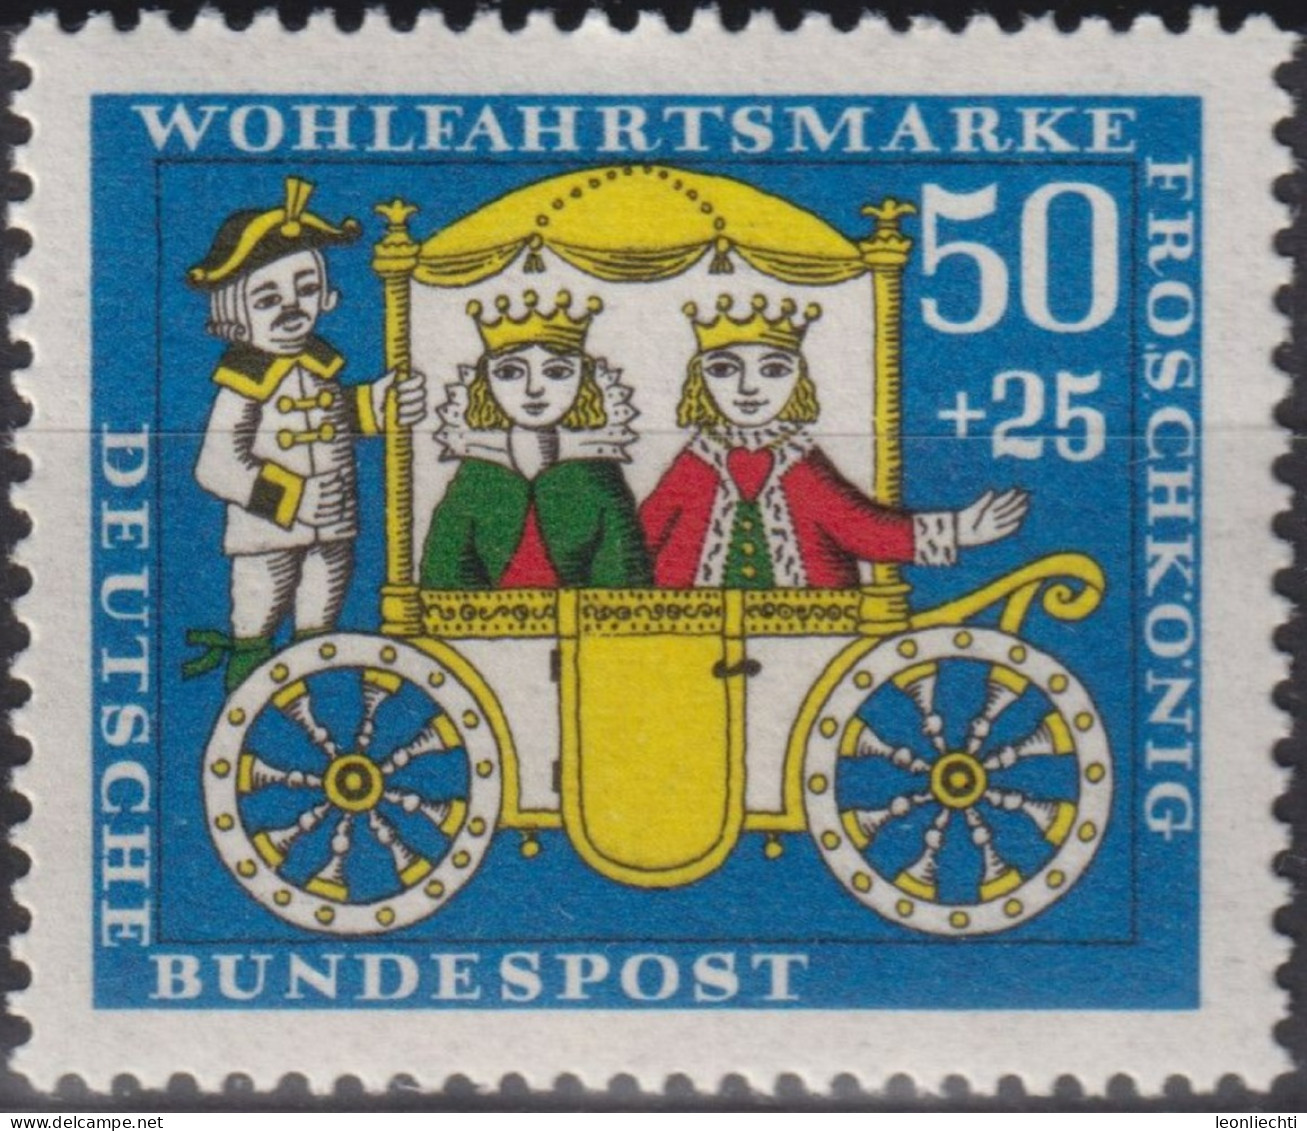 1966 Deutschland > BRD, ** Mi:DE 526, Sn:DE B421, Yt:DE 383, Froschkönig, Gebrüder Grimm, Kutsche - Fairy Tales, Popular Stories & Legends